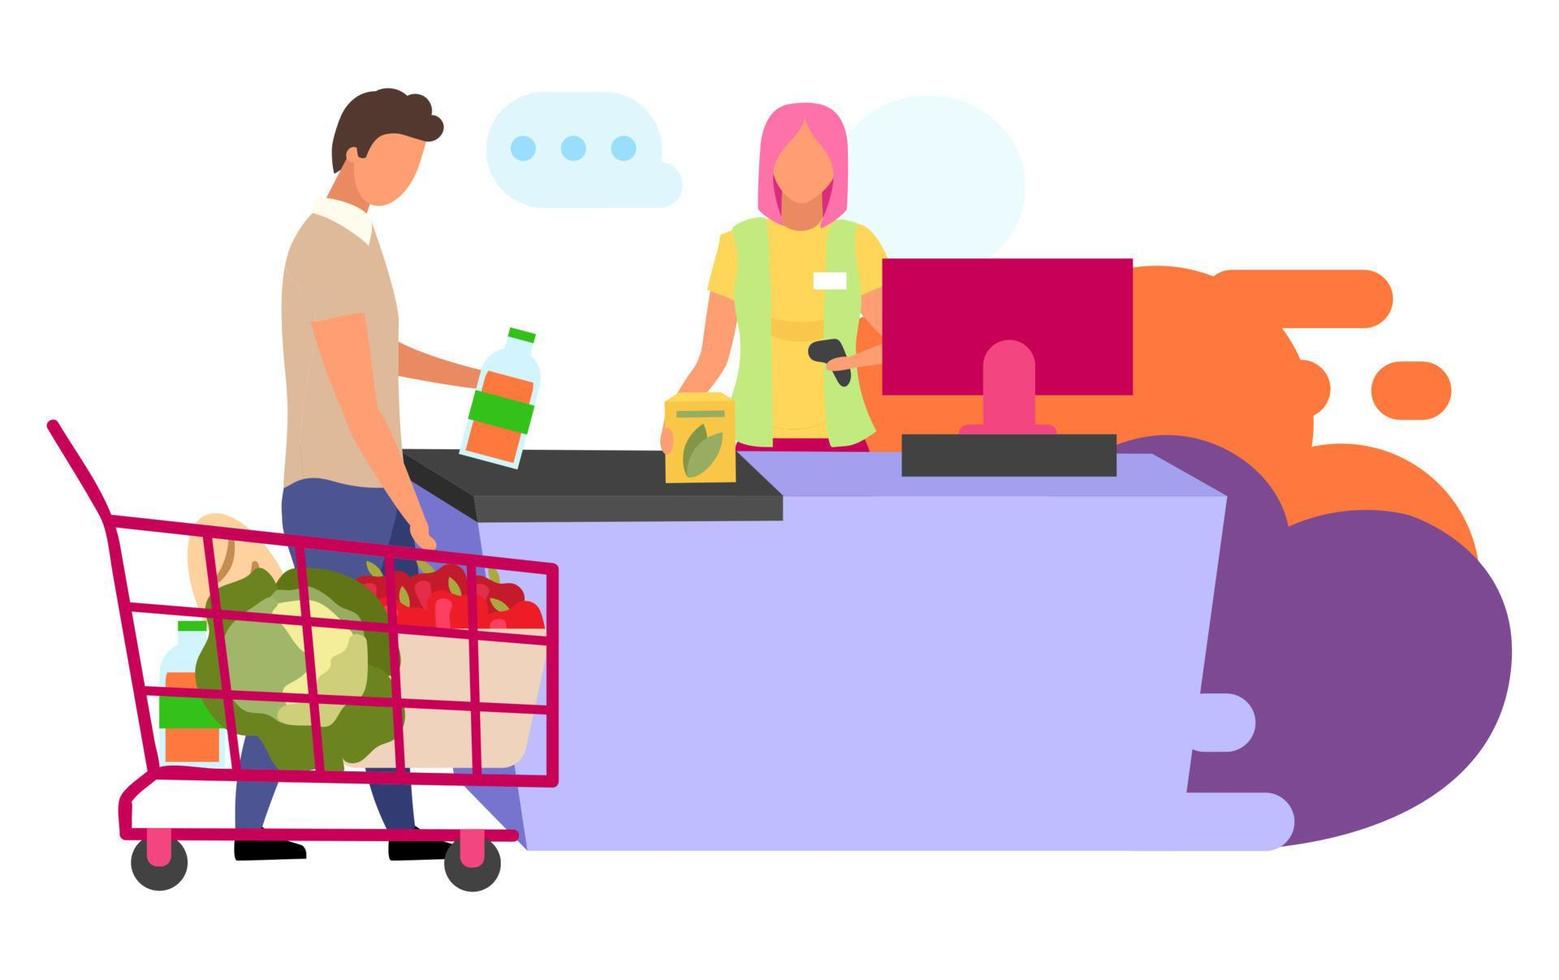 Einkaufen im Supermarkt flache Vektorgrafiken. Supermarkt Kassierer und Kunden Zeichentrickfiguren isoliert auf weißem Hintergrund. Einkauf von Lebensmitteln, Produkten. Einkäufe tätigen, Einkaufskonzept vektor